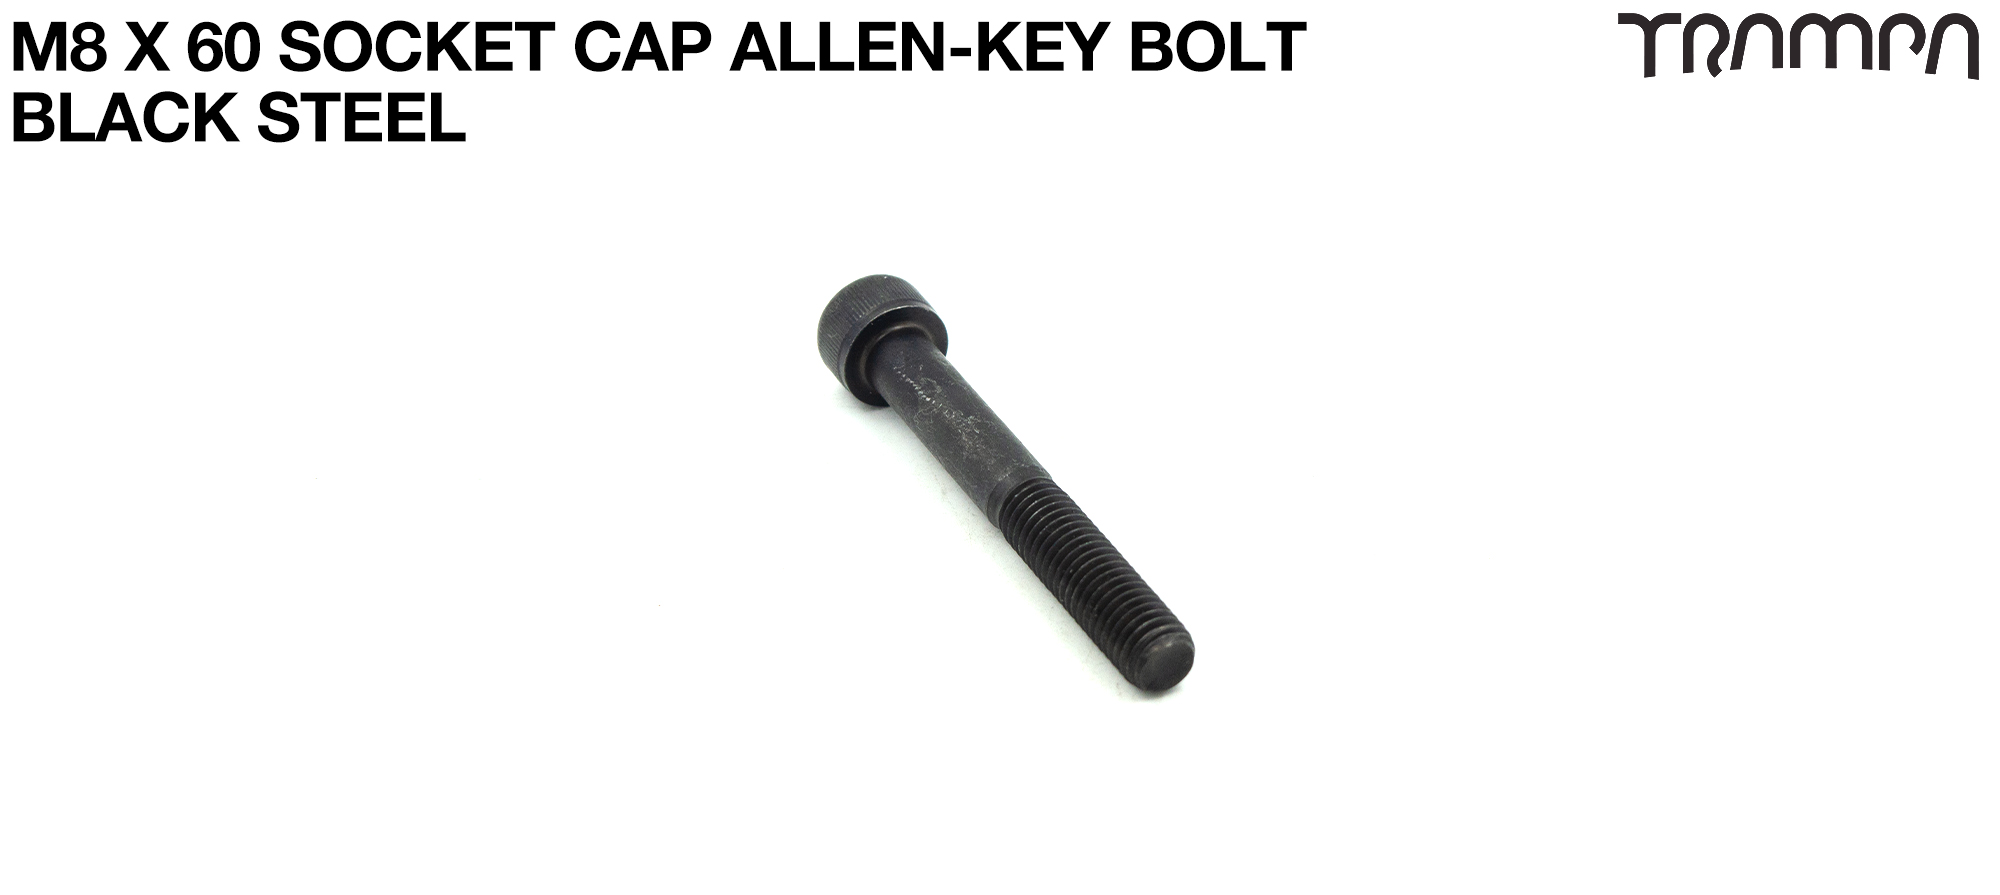 M8 x 60mm Socket Capped Allen-Key Bolt for primo hub - Marine Grade Stainless steel - Black Steel